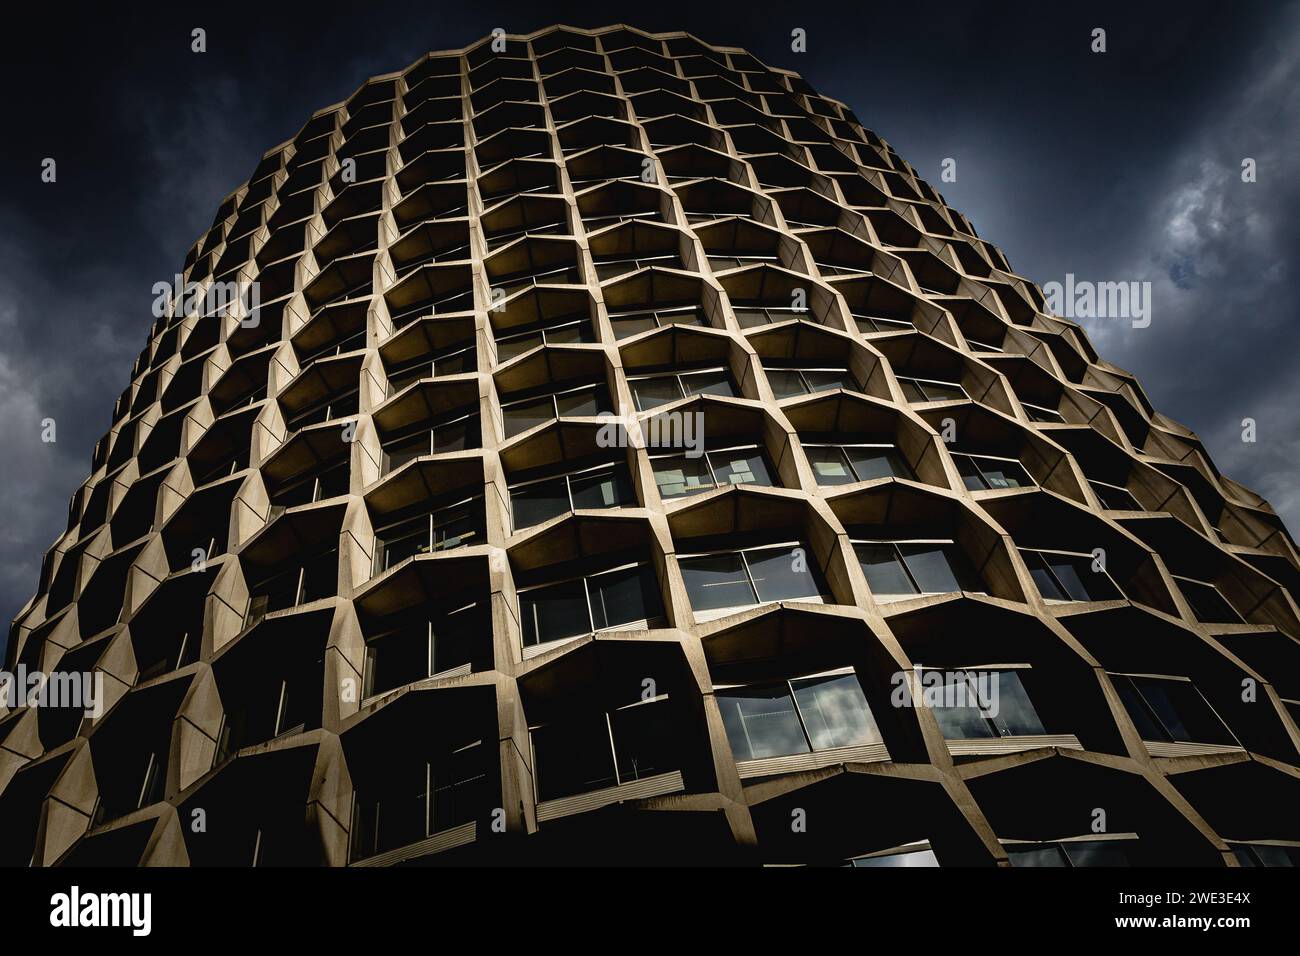 Das ikonische Space House mit Betonrahmen alias 1 Kemble Street, früher bekannt als CAA House, ist ein brutalistisches Gebäude in Camden, London, Großbritannien Stockfoto